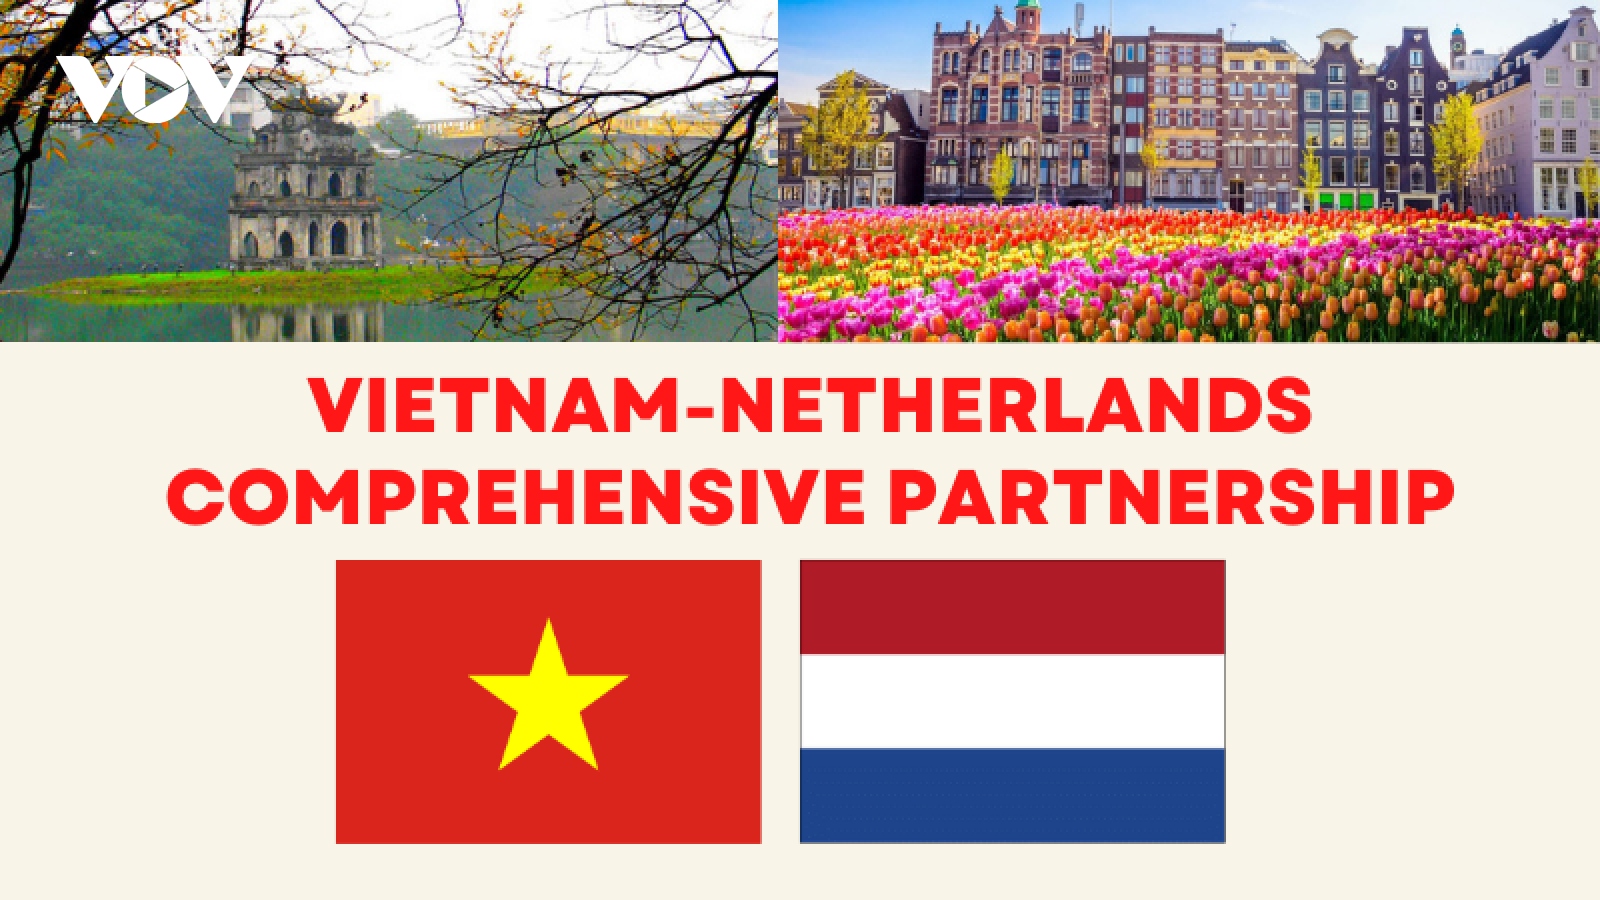 Major milestones in Vietnam-Netherlands comprehensive partnership